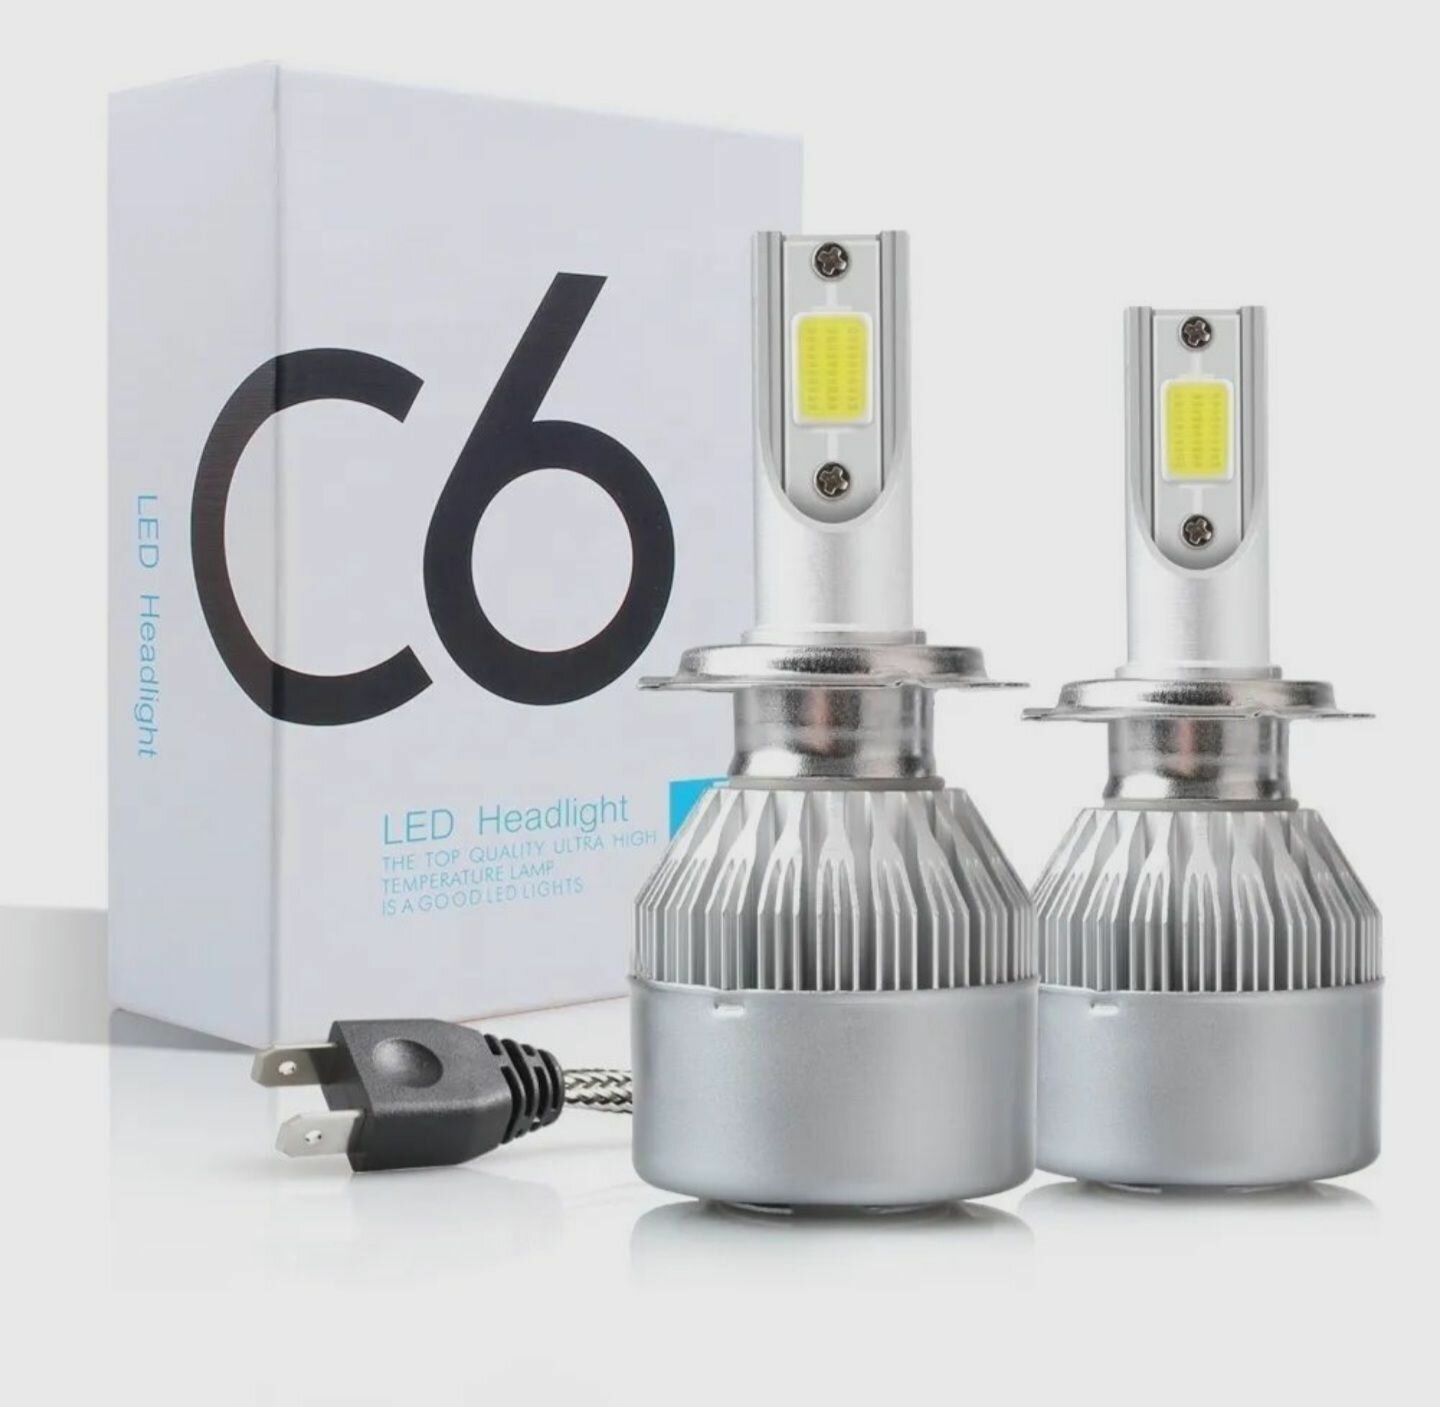 Лампа светодиодная LED C6 цоколь H11, 4300К, комплект 2шт, для головного света и птф